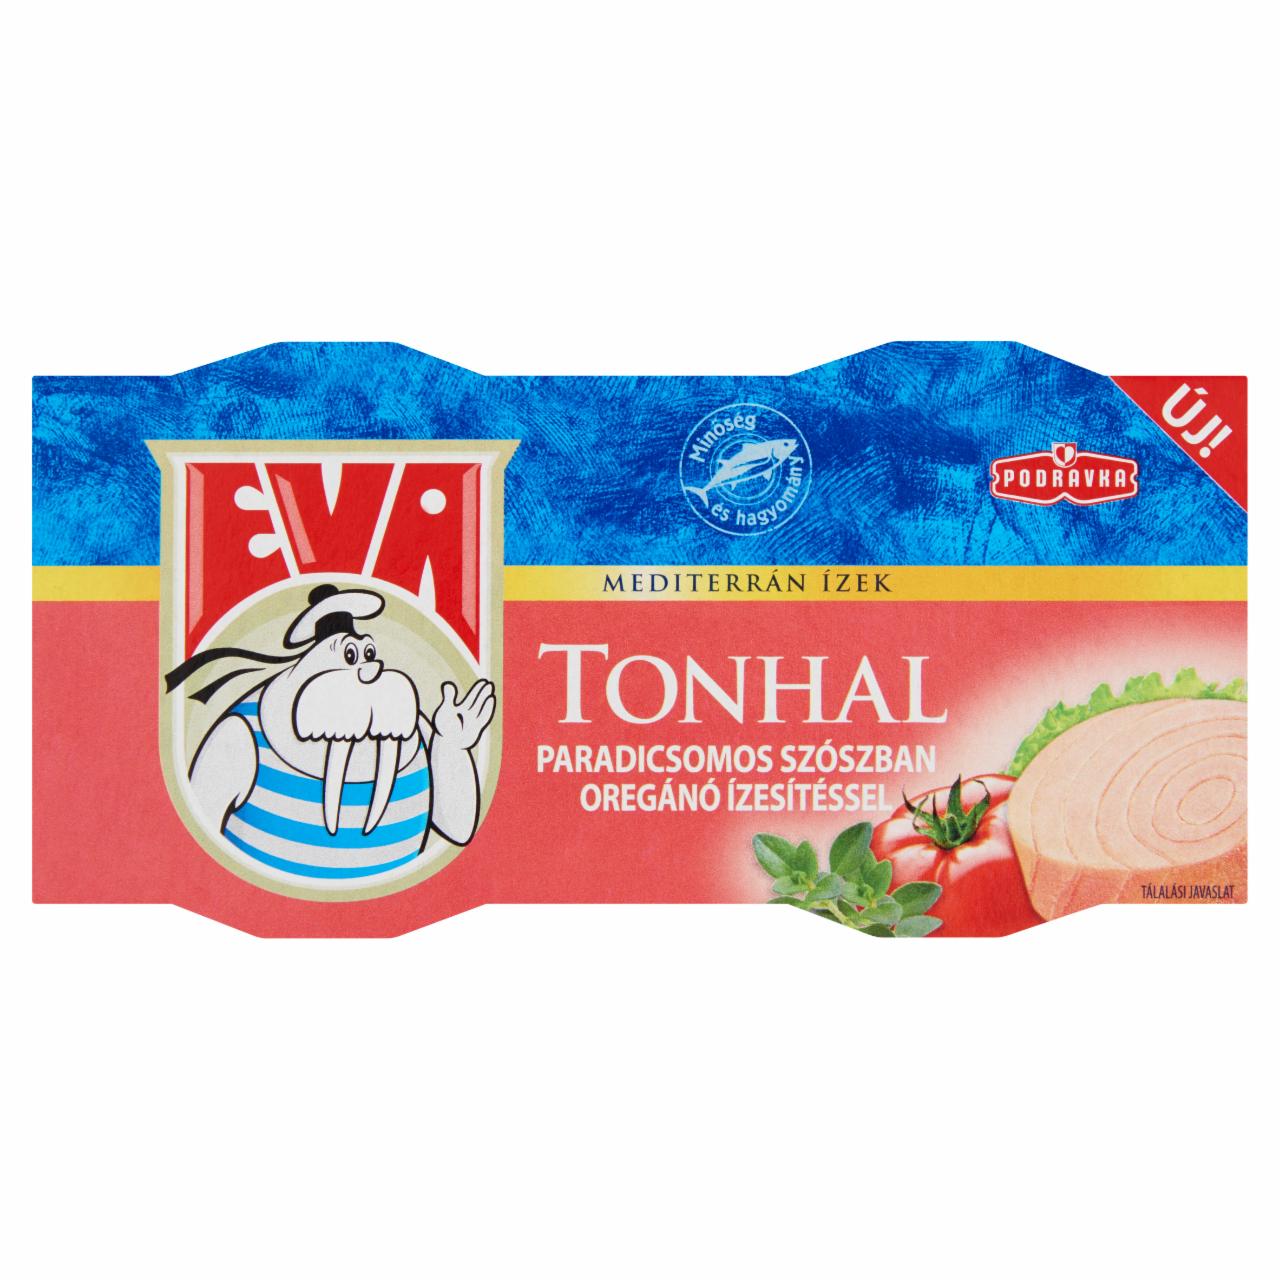 Képek - Podravka Eva tonhal paradicsomos szószban oregánó ízesítéssel 2 x 80 g